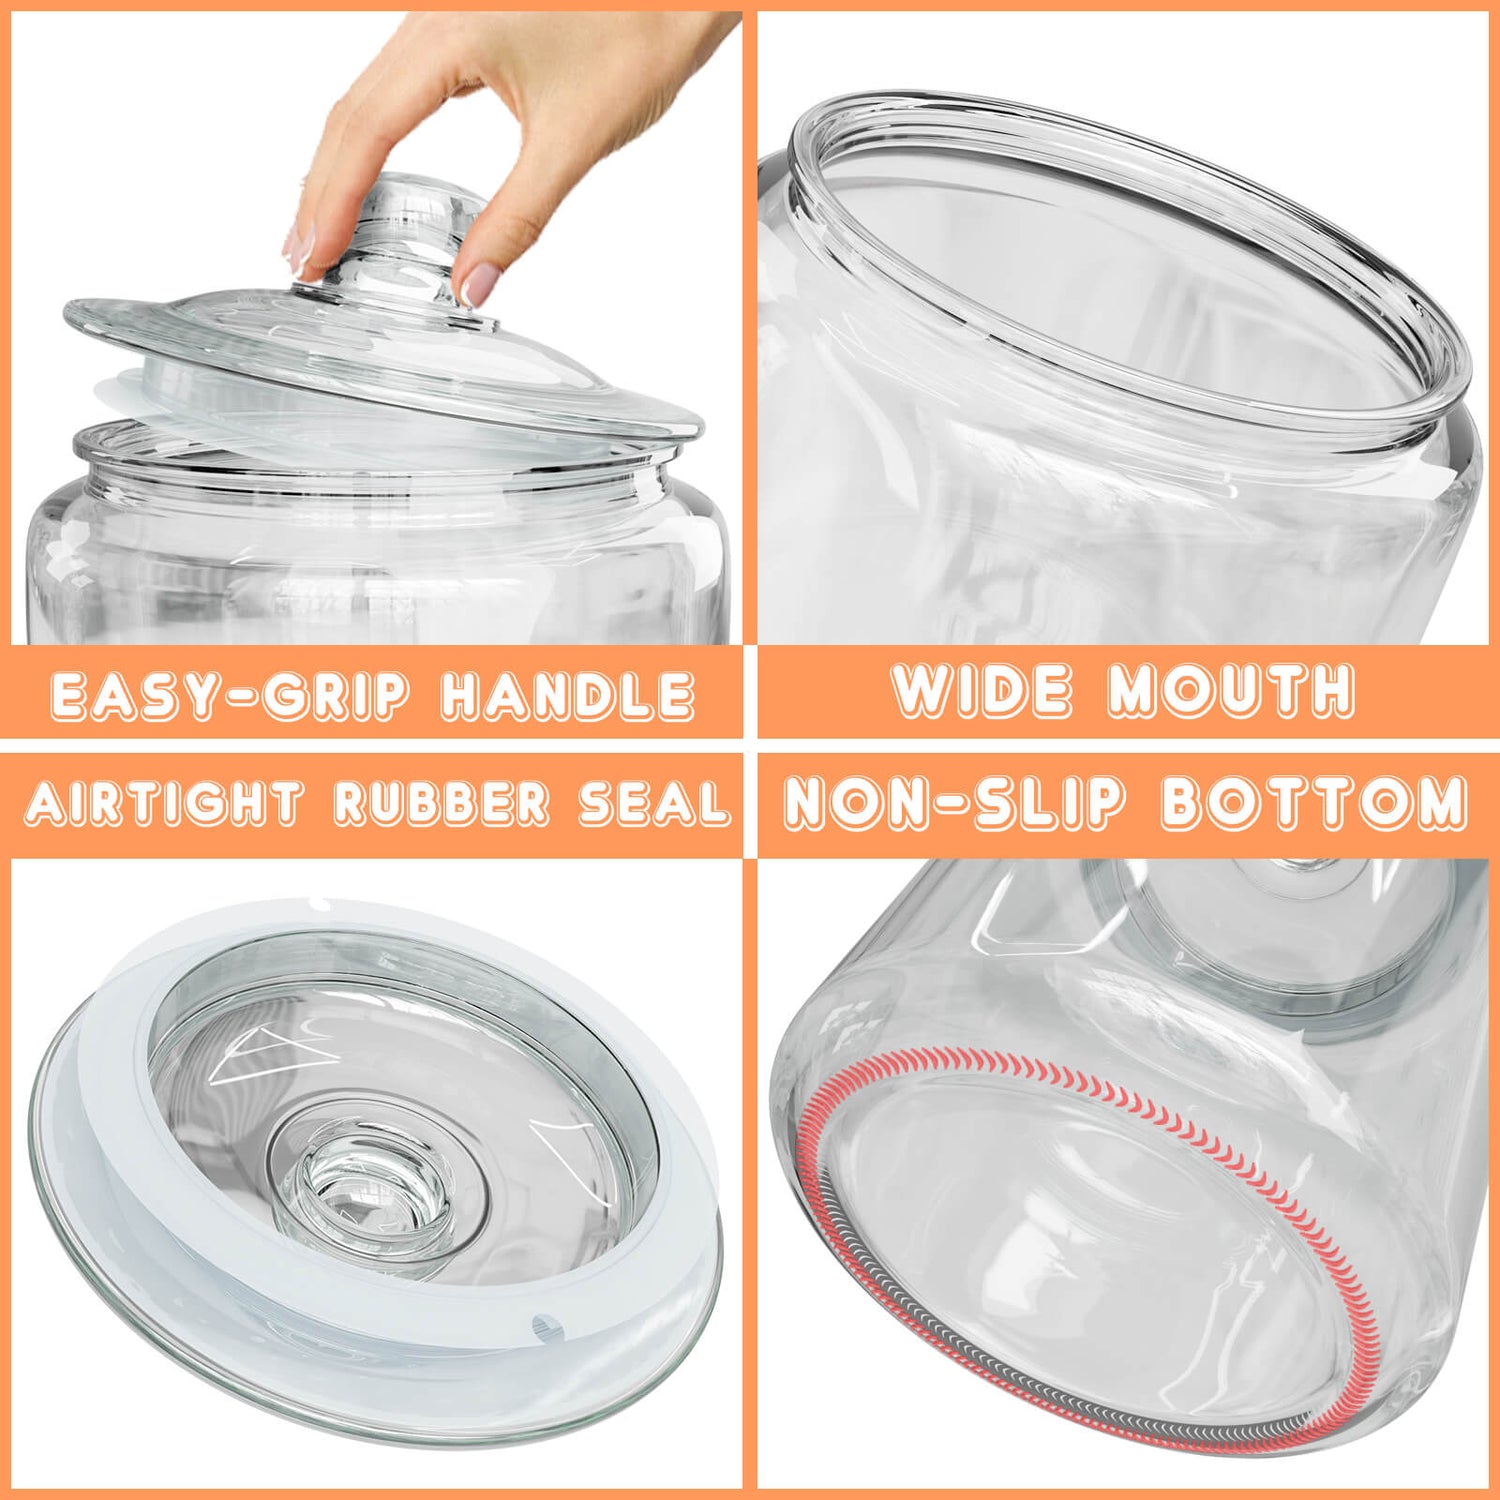 Glass Jar with Glass Lid (1 Gallon) - WebstaurantStore